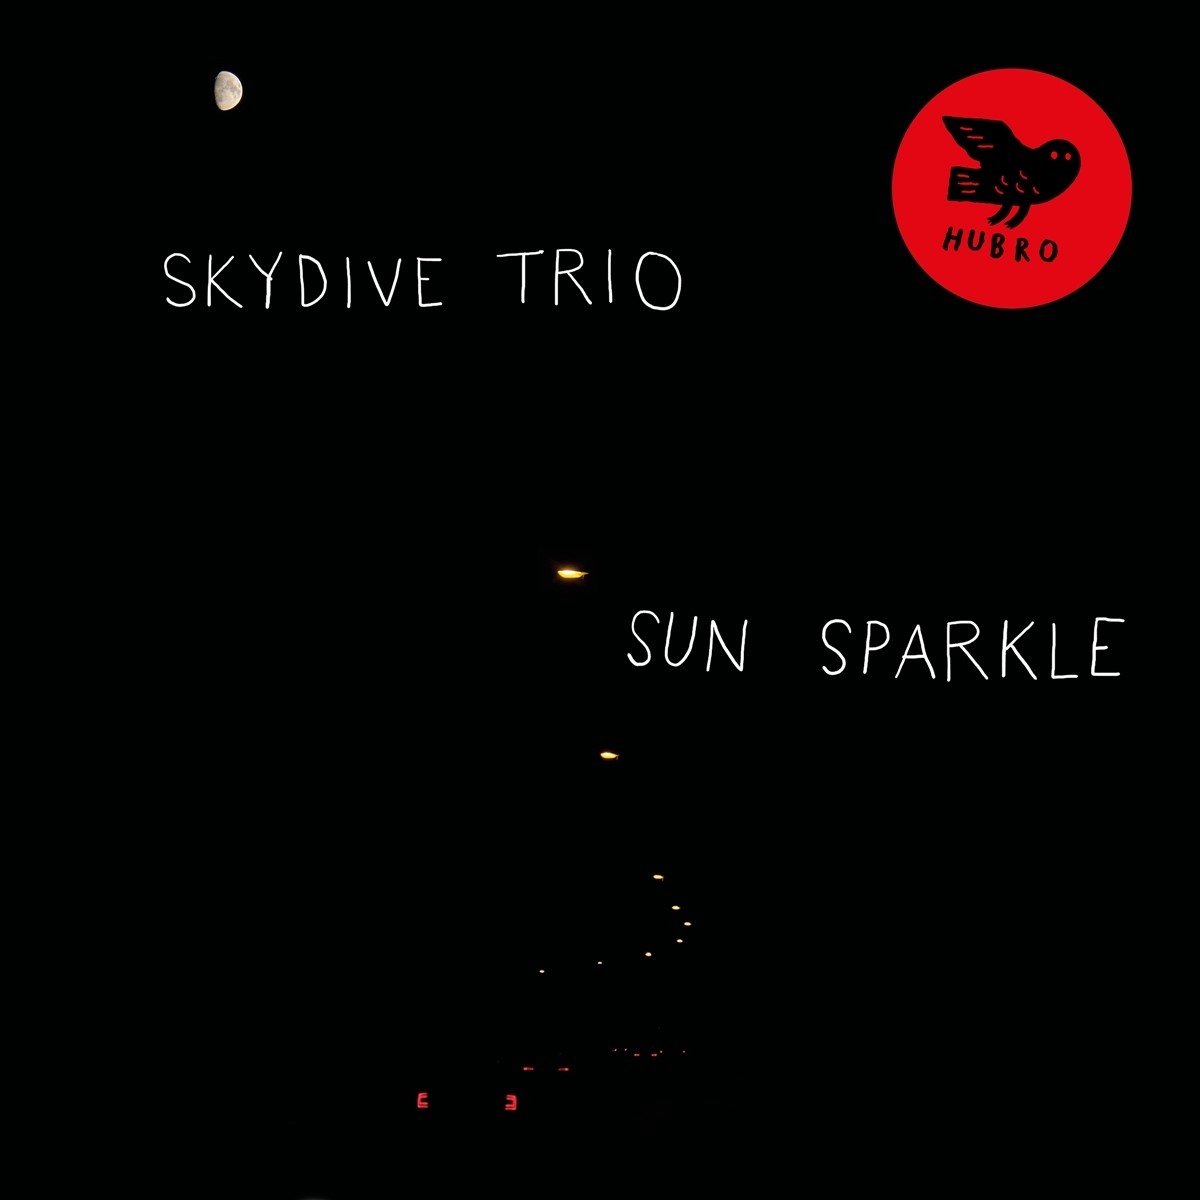 Skydive Trio - Sun Sparkle (CD) - Skydive Trio